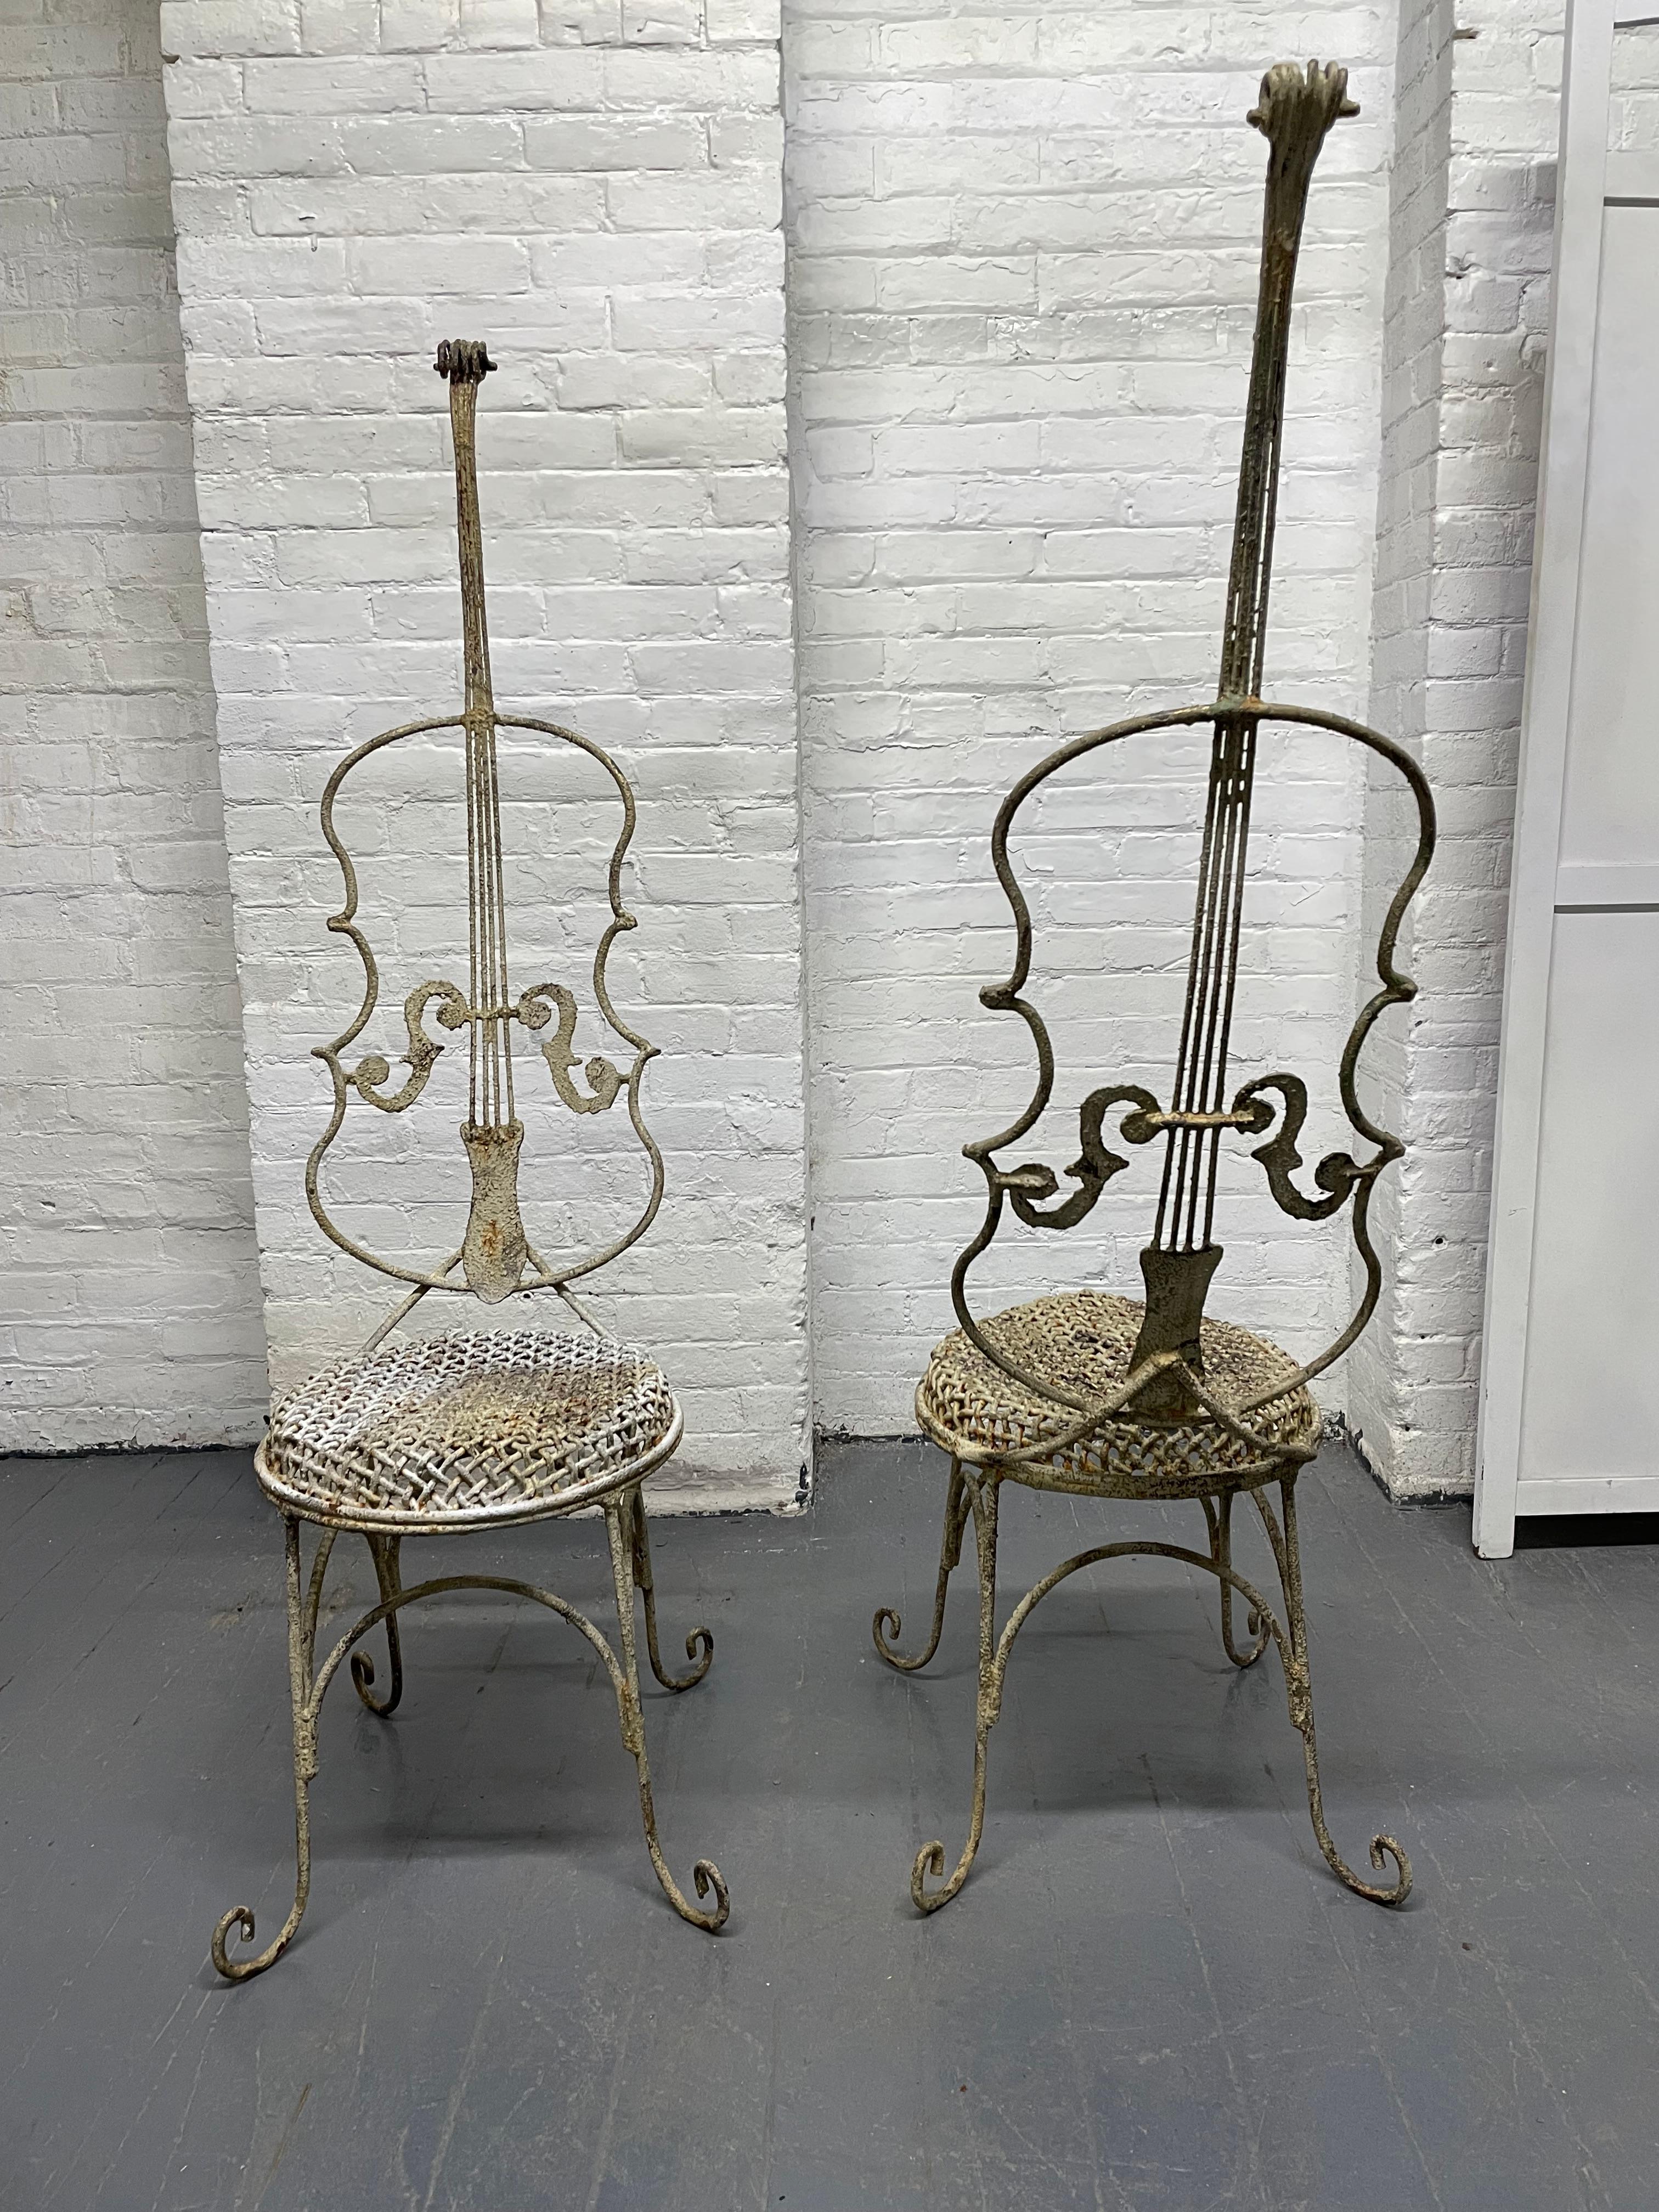 Paire de chaises vintage en forme de cello en fer peint. Les chaises sont dotées de pieds à volutes, de hauts dossiers et de sièges circulaires en relief de style vannerie.